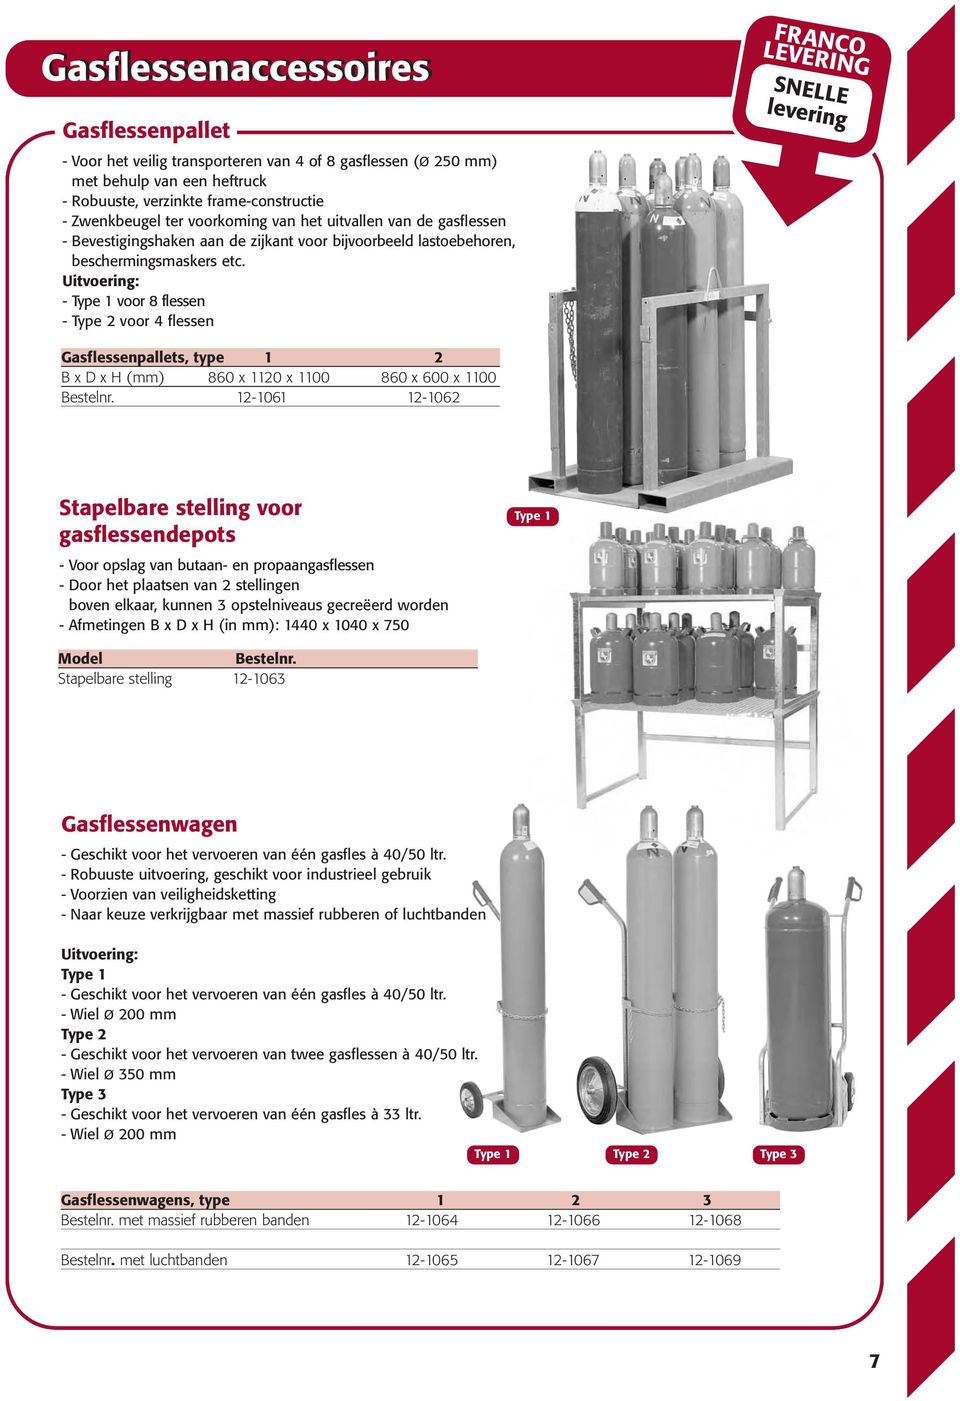 Uitvoering: - voor 8 flessen - Type 2 voor 4 flessen SNELLE levering Gasflessenpallets, type 1 2 B x D x H (mm) 860 x 1120 x 1100 860 x 600 x 1100 Bestelnr.